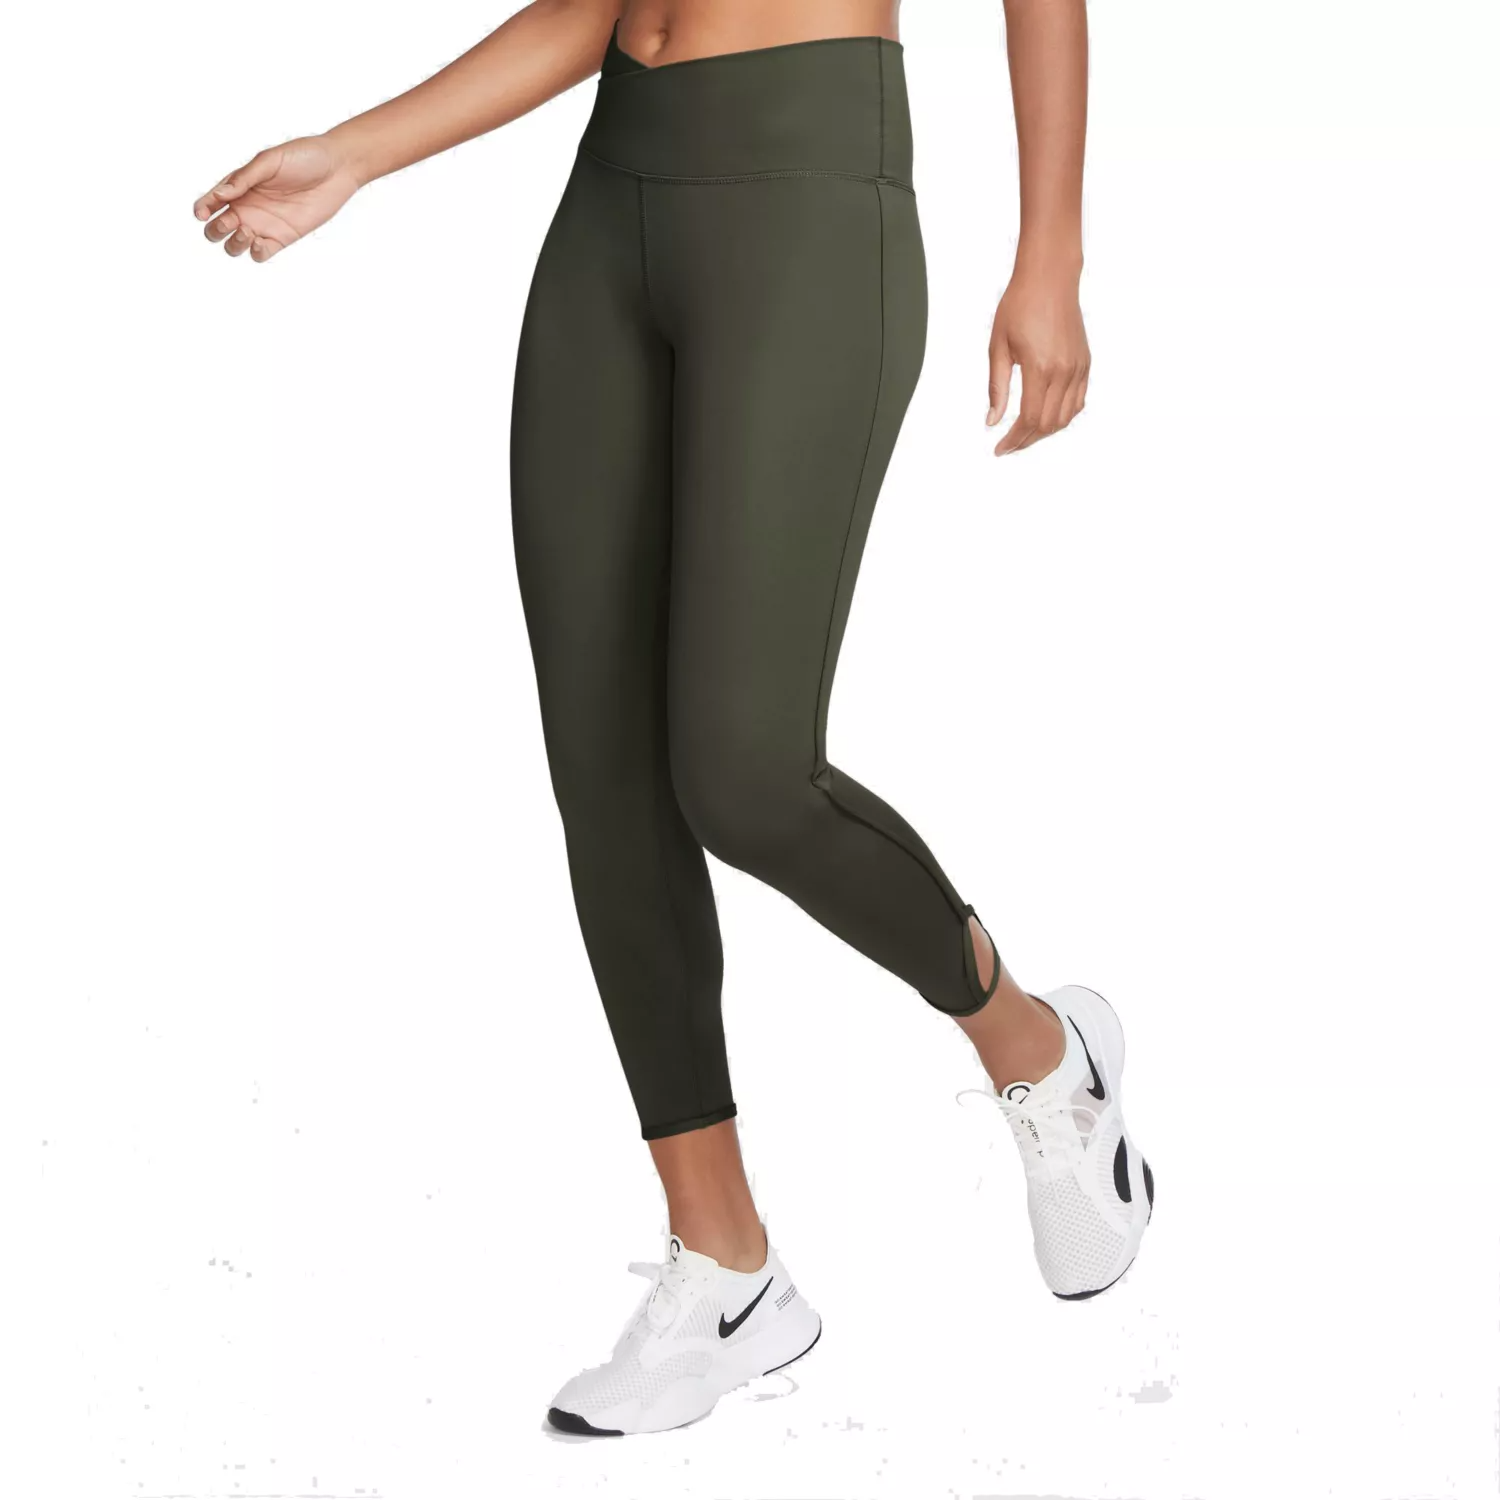 Primary image for New Nike Women's Yoga Cargo Khaki (Olive) 7/8 Legging (DJ0801-325) Size XS